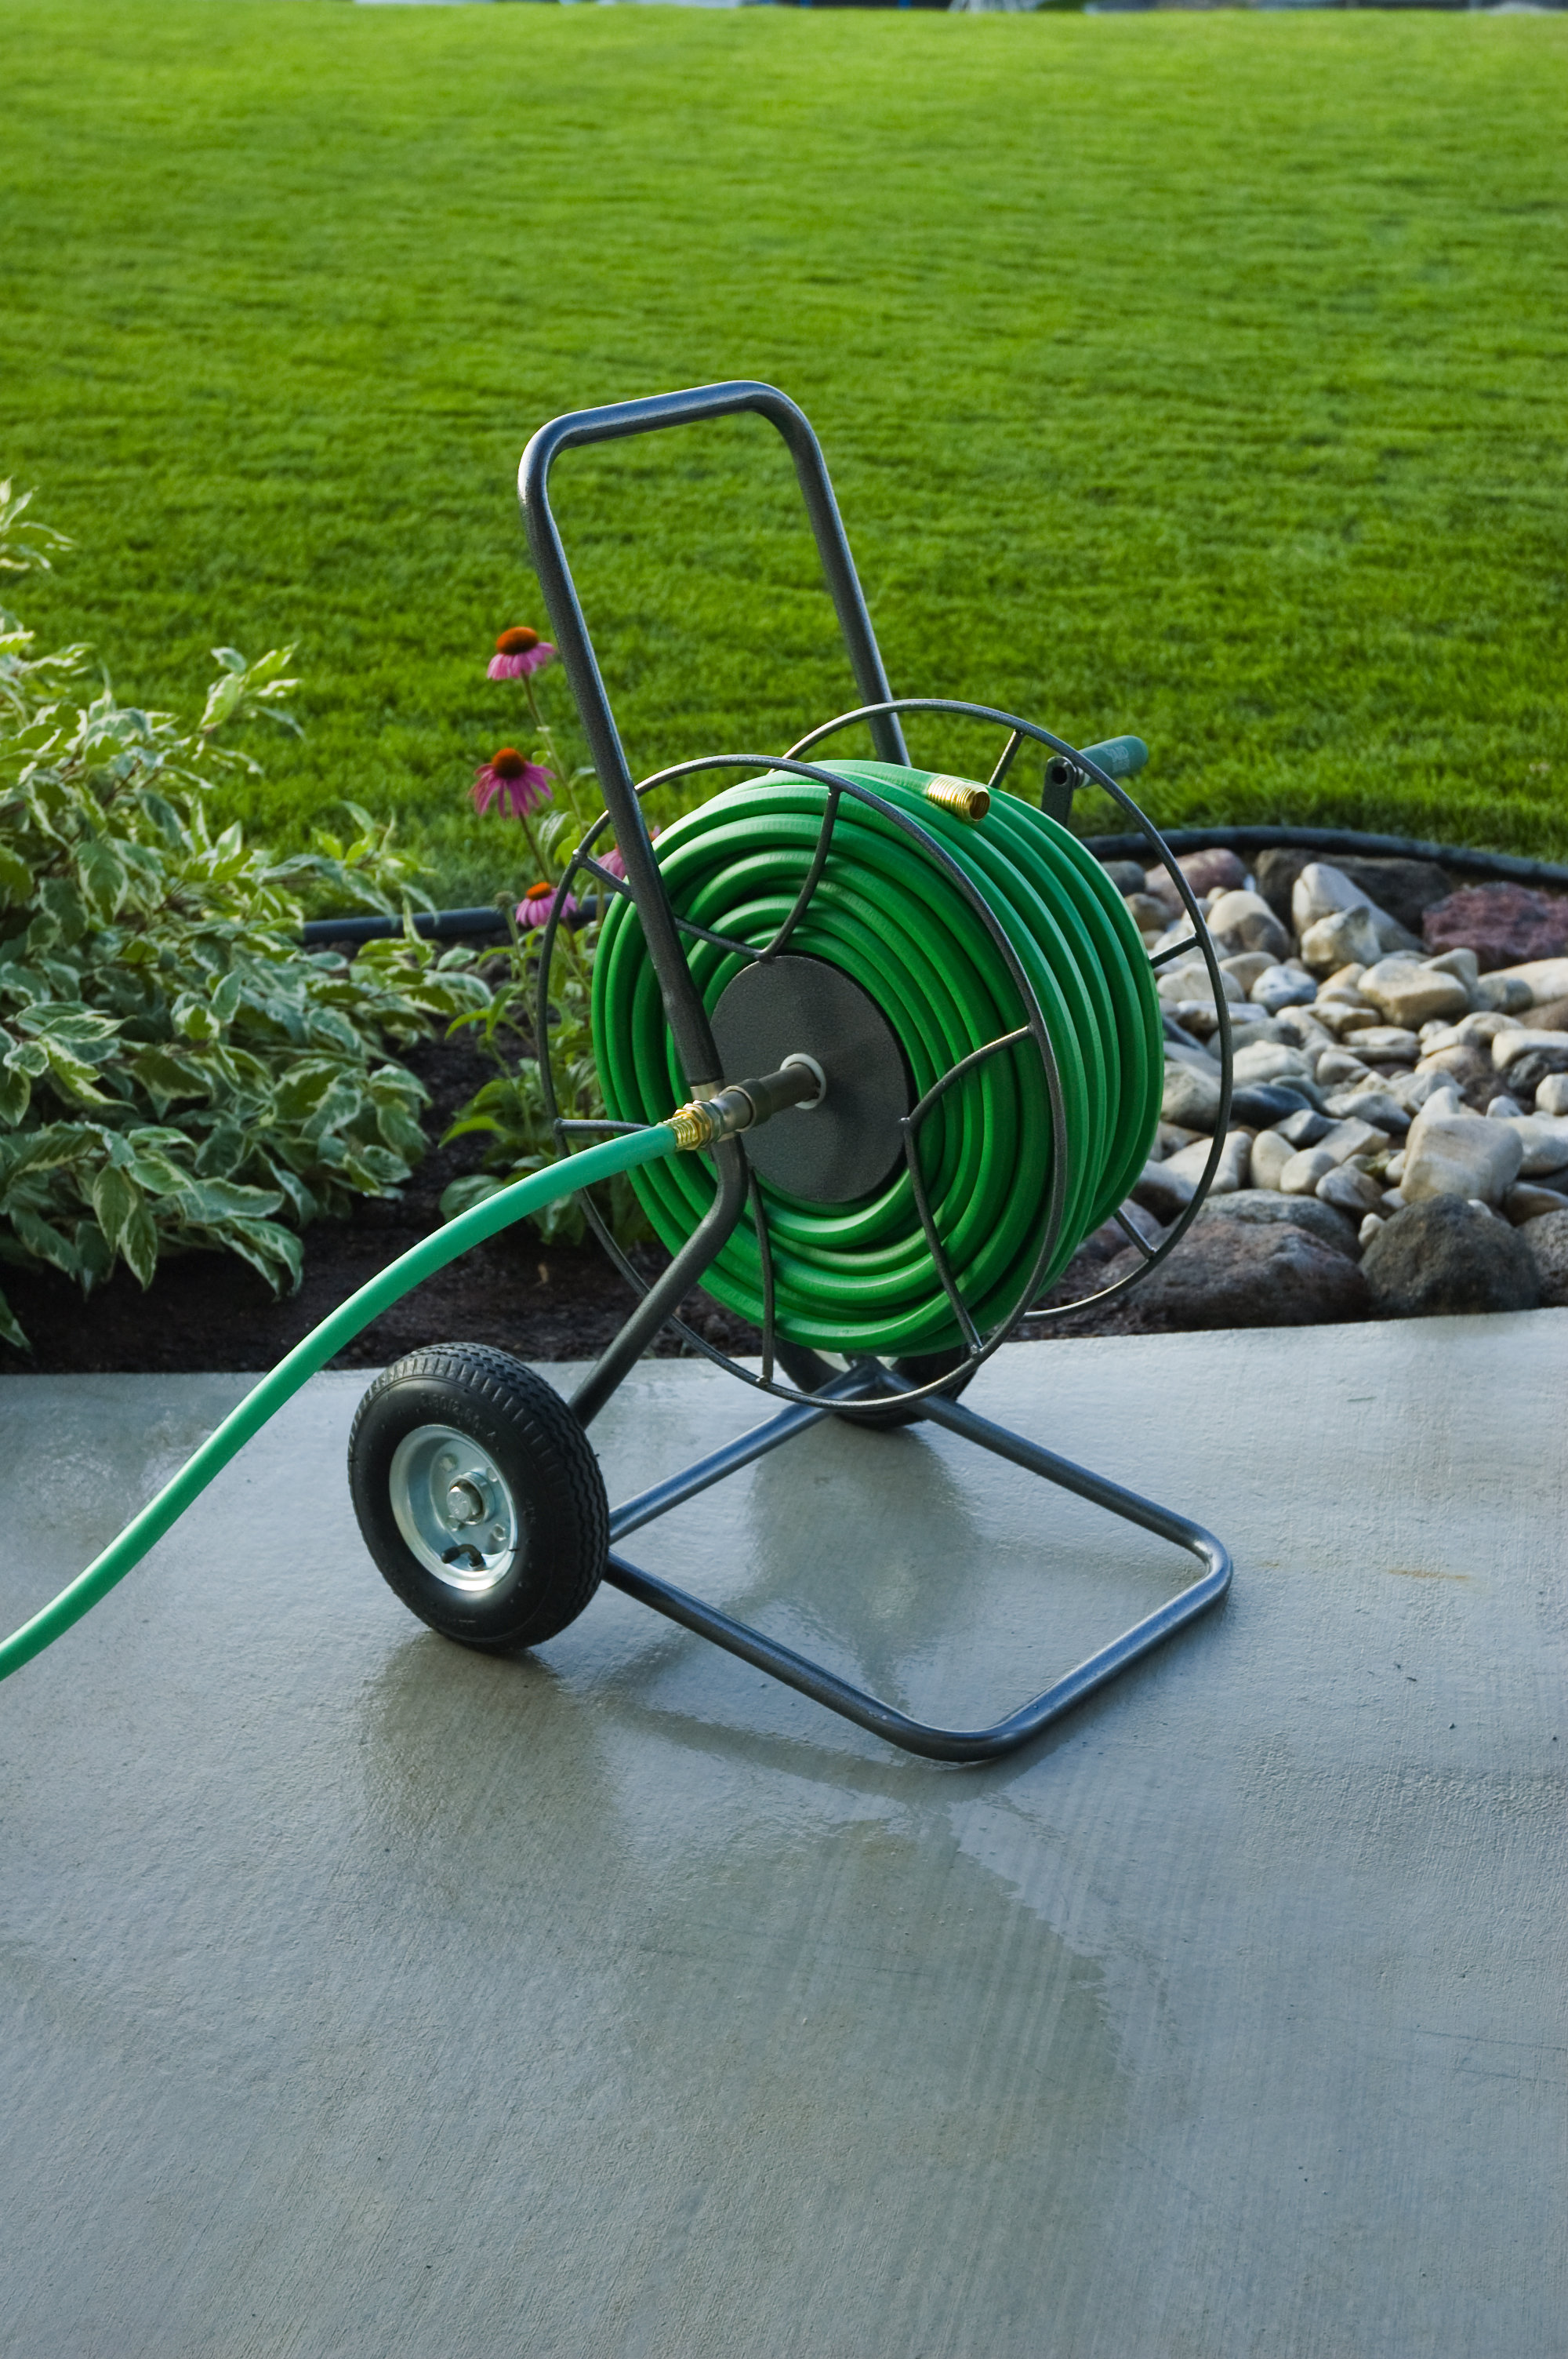 https://assets.wfcdn.com/im/78725516/compr-r85/2434/243456899/yard-butler-two-wheel-garden-steel-hose-reel-cart-200.jpg